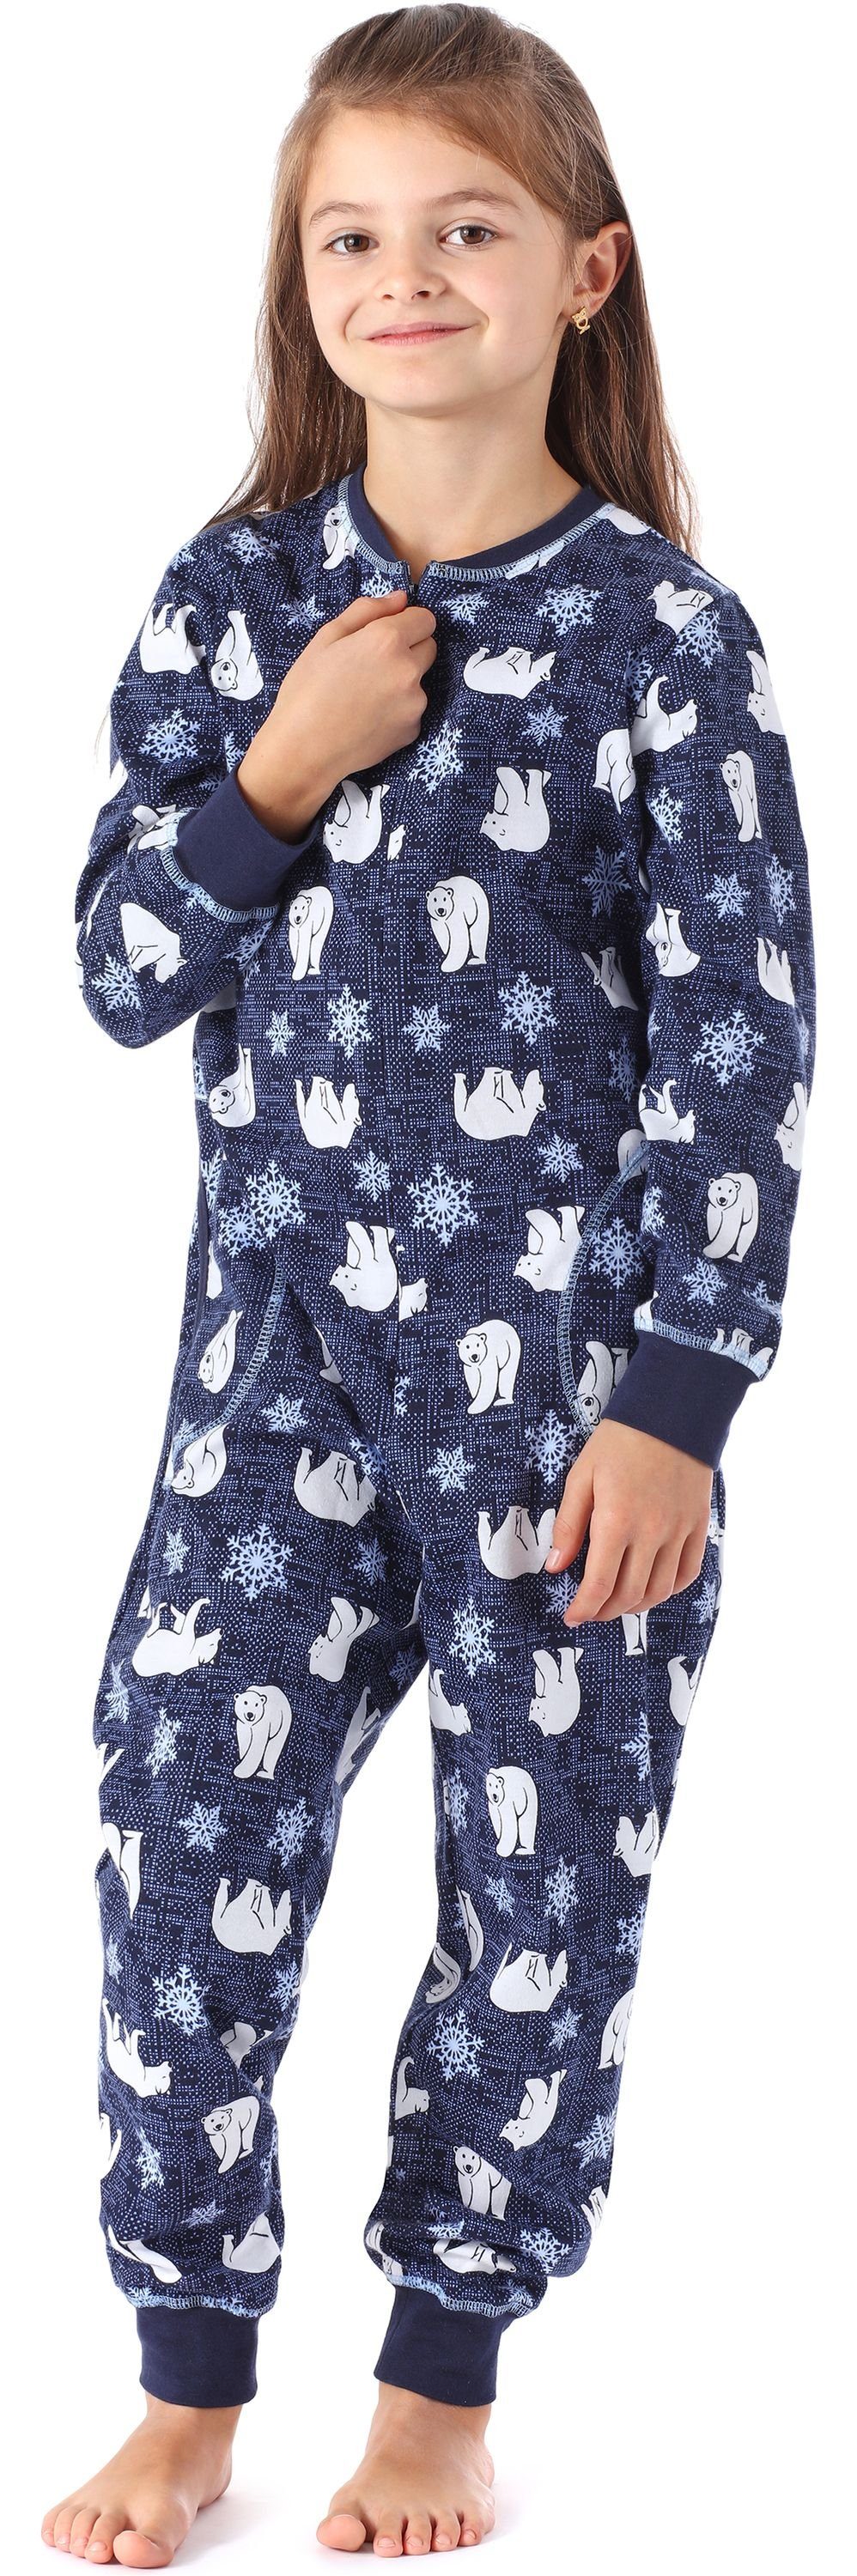 Schlafanzug Bär Schlafanzug Mädchen Jumpsuit Style Marine Merry MS10-186